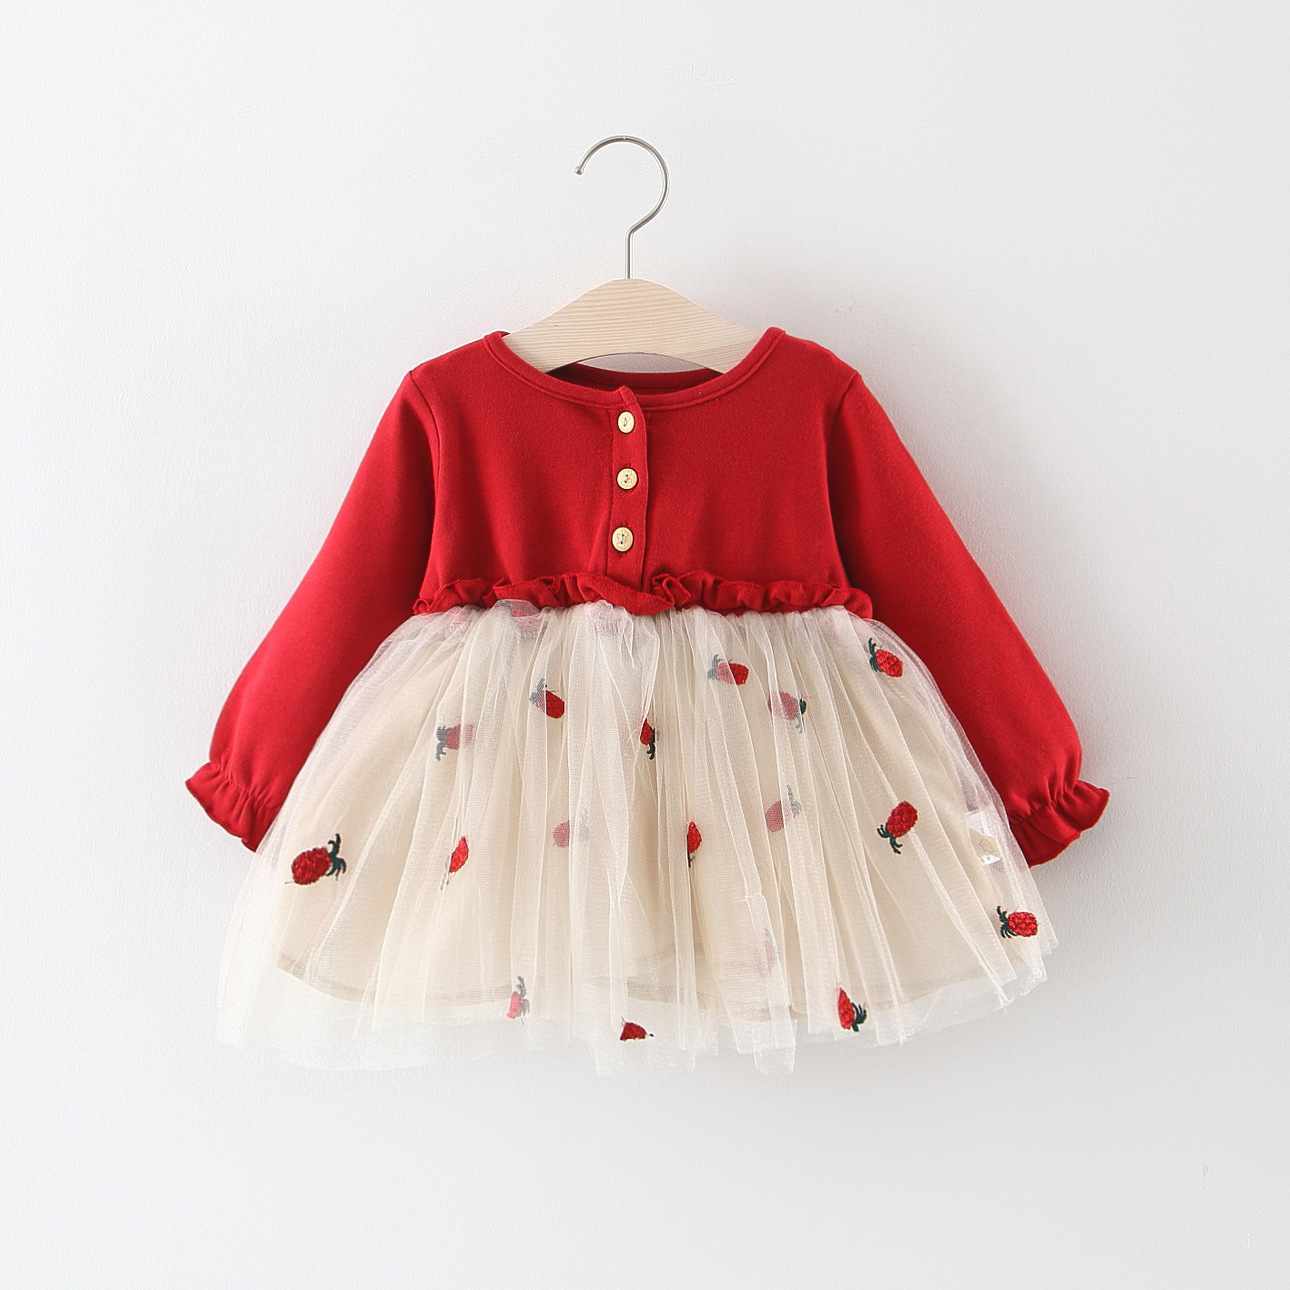 BY-12 Dress Bayi Tutu Carrot Merah Khusus anak perempuan / Gaun bayi Baju Lengan Panjang Kualitas Import Bahan Premium Lembut dan Nyaman diPakai Lama